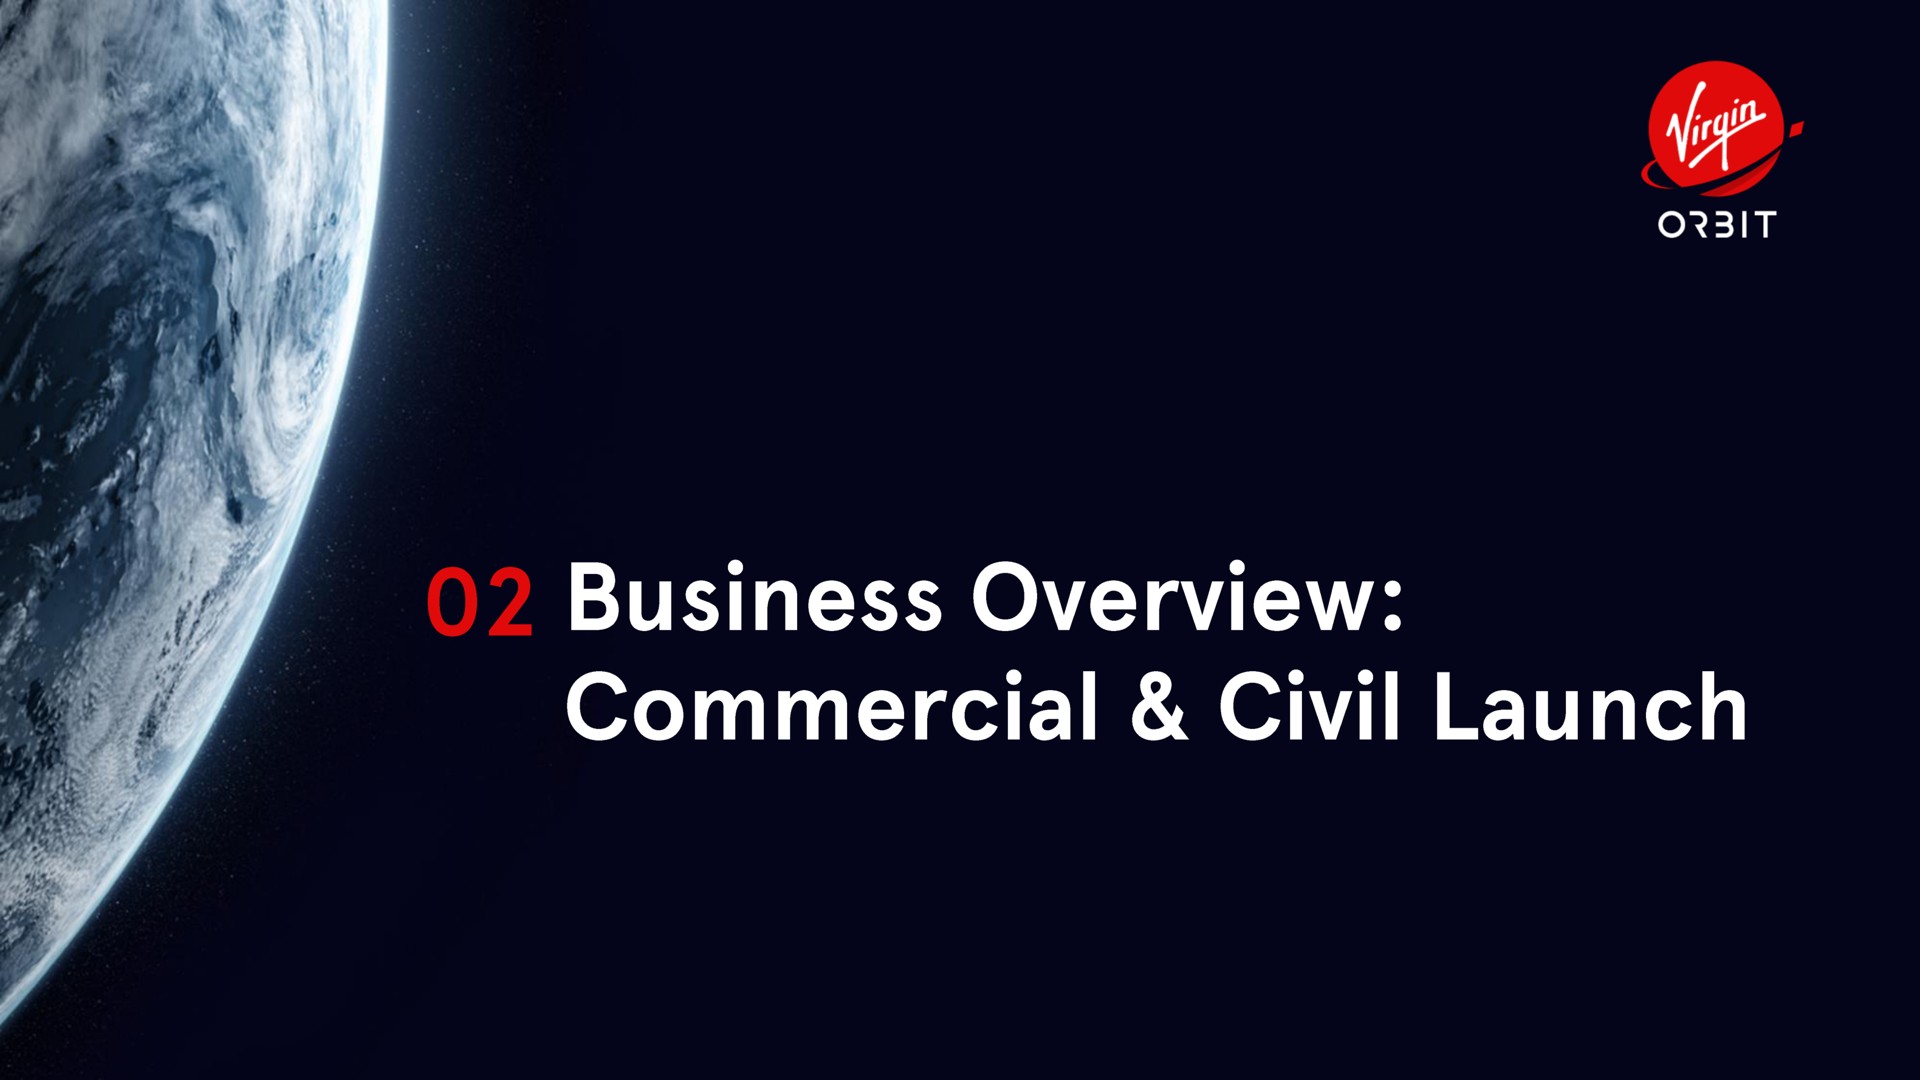 business overview commercial civil launch | Virgin Orbit